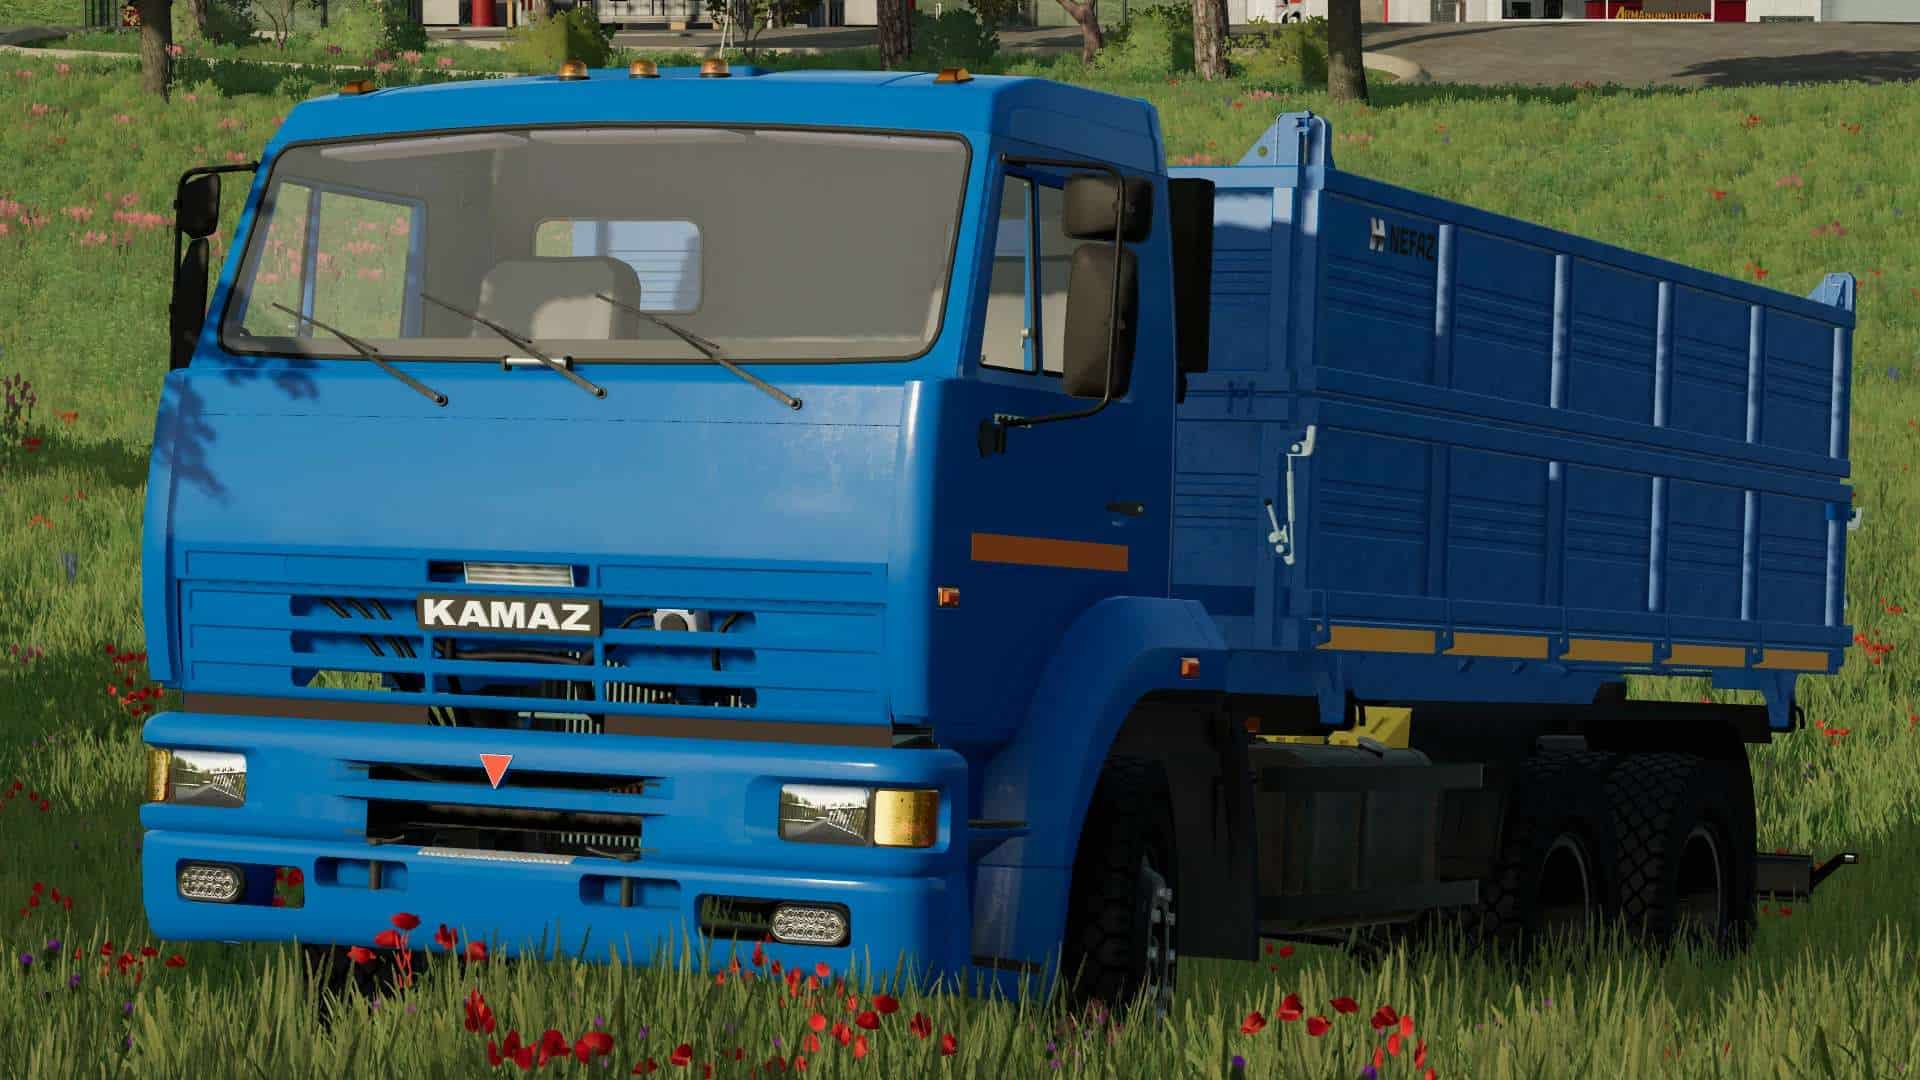 Fs22 Kamaz 45143 V1000 Fs 22 Trucks Mod Download 6290